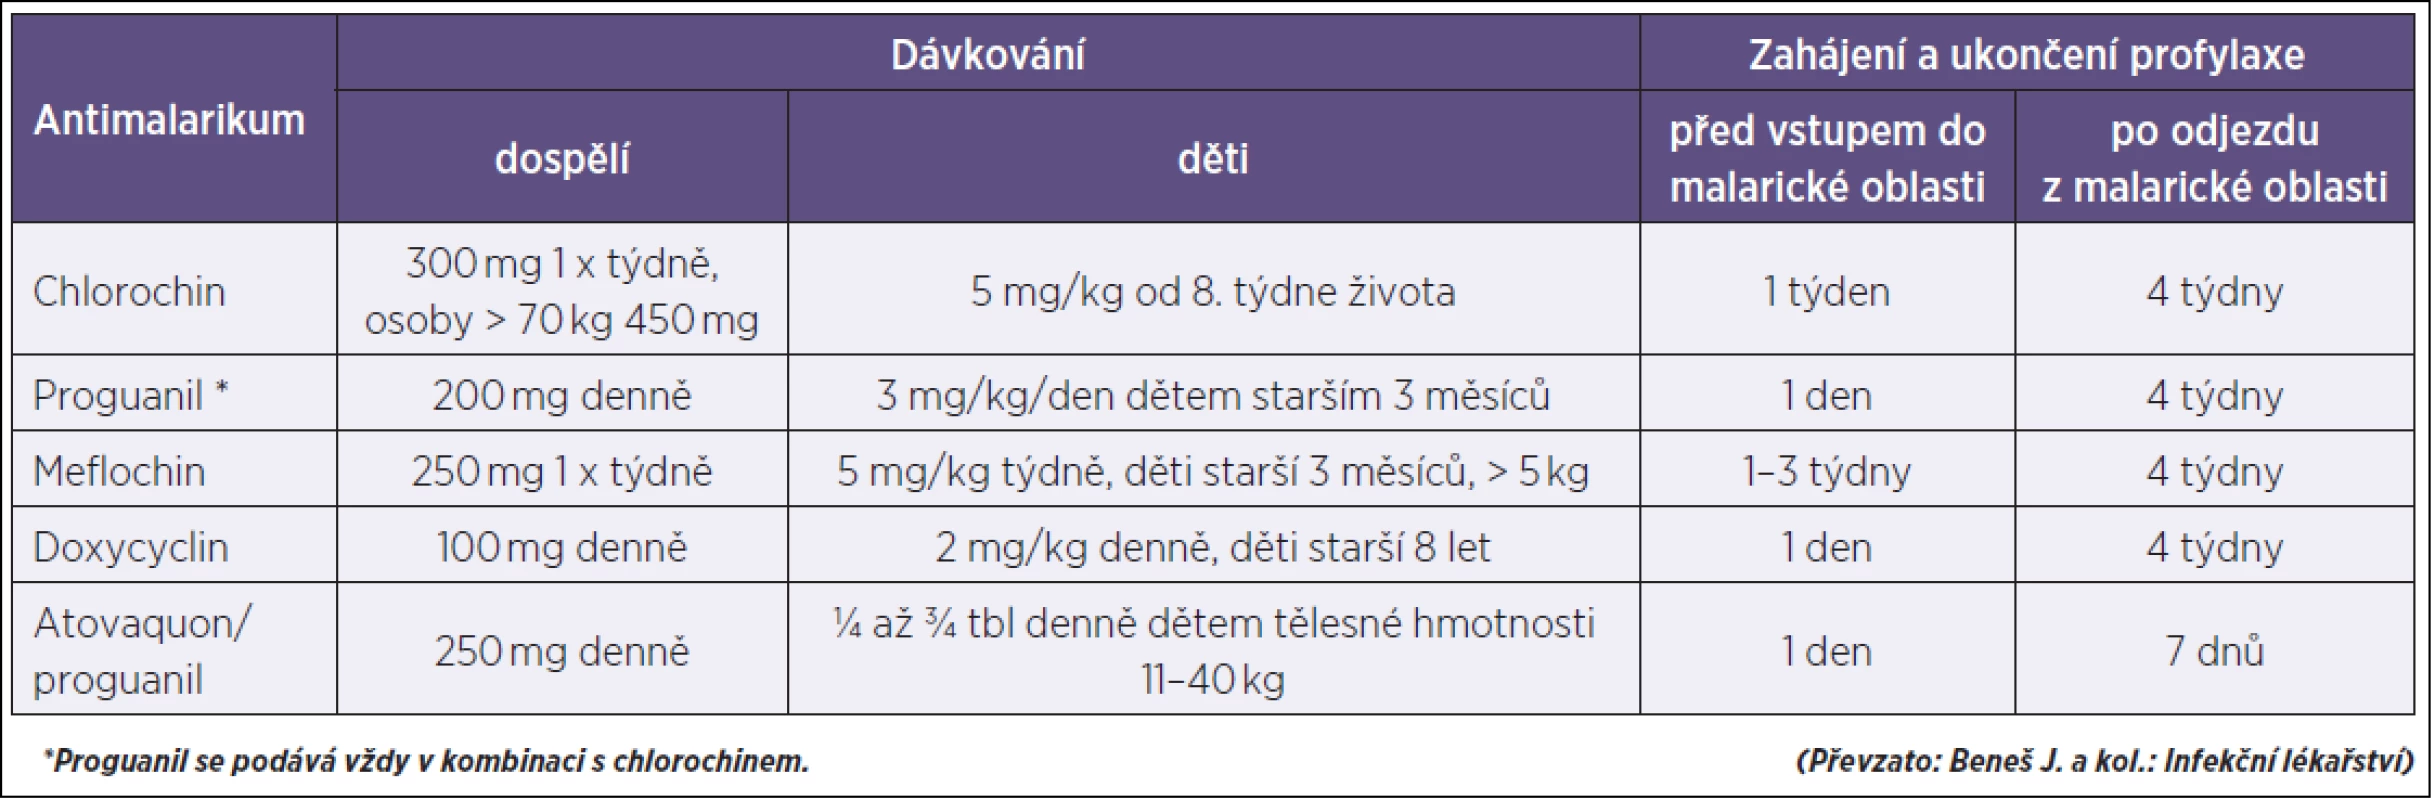 Profylaktické podávání antimalarik
Table 2. Prophylactic antimalarial drugs